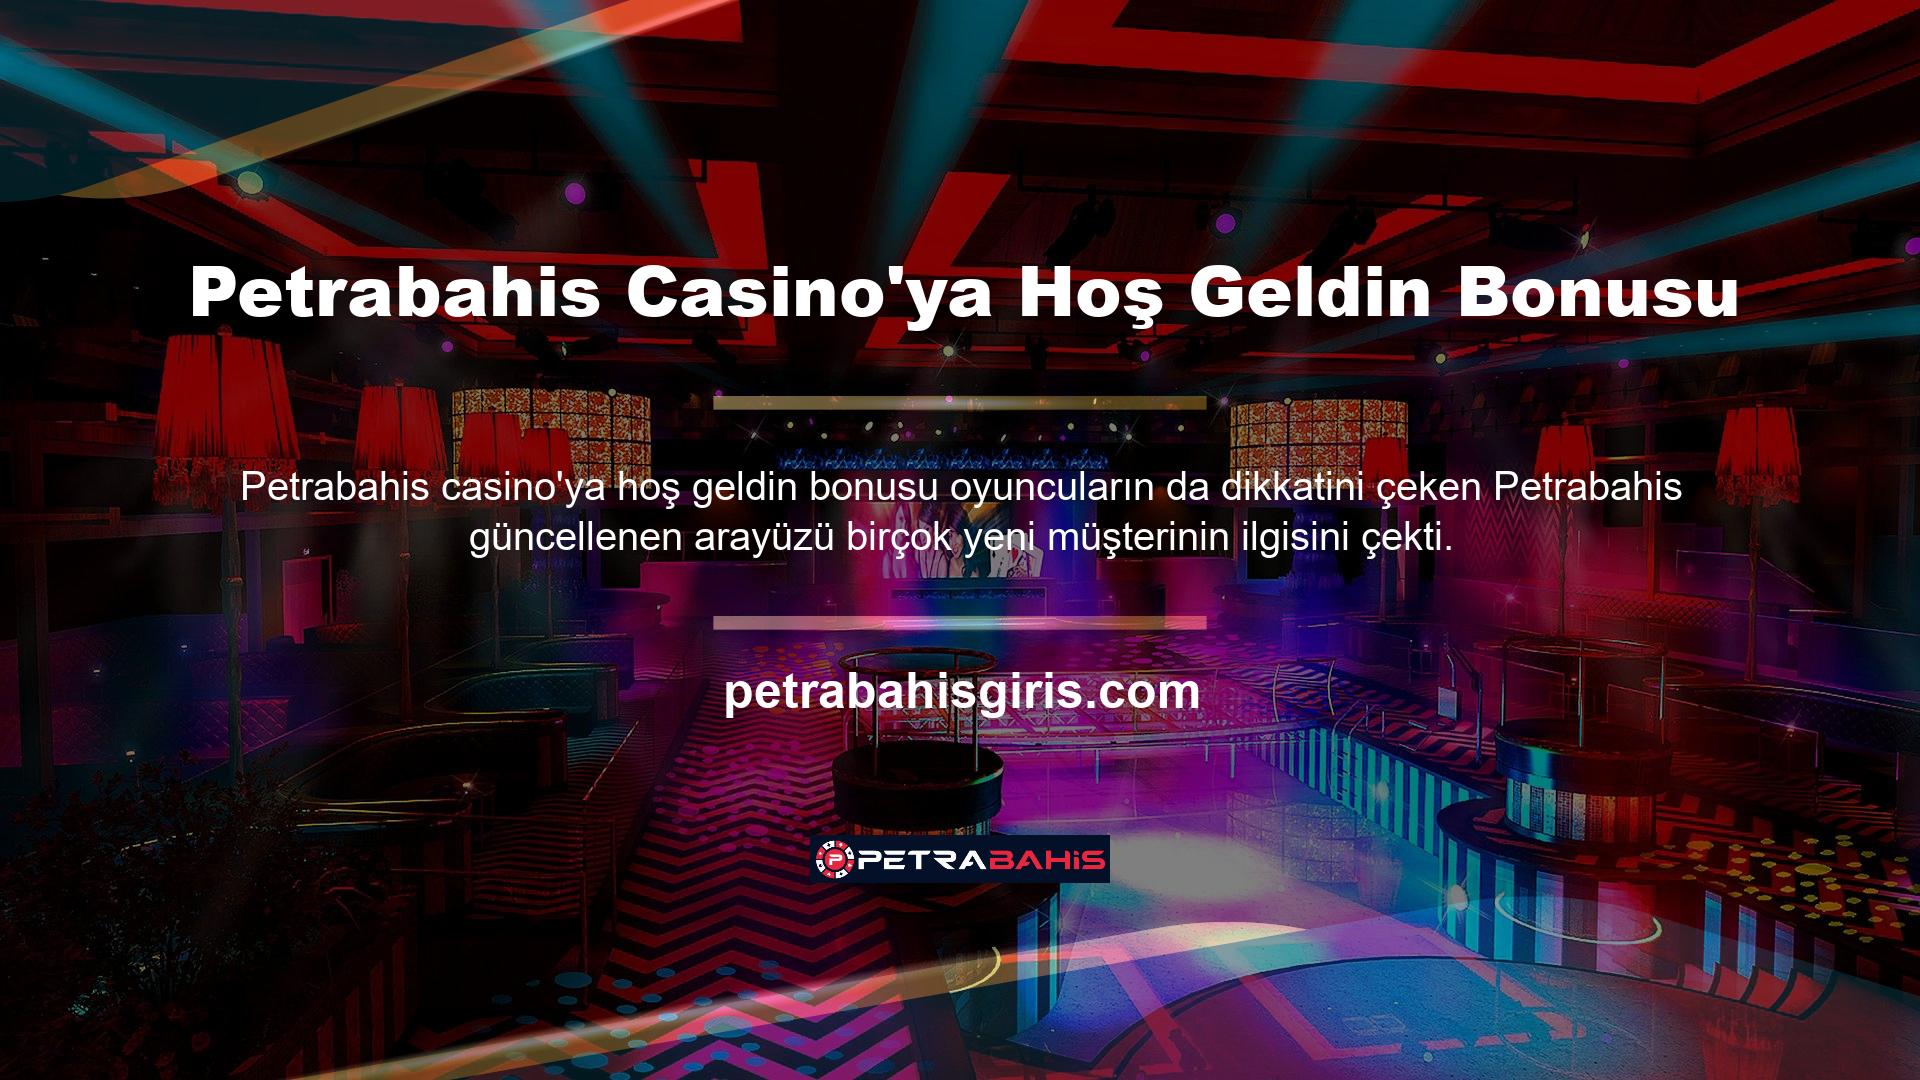 Petrabahis casino hoş geldin bonusu, güvenli bir bahis sitesi arayüzü aracılığıyla sunulur